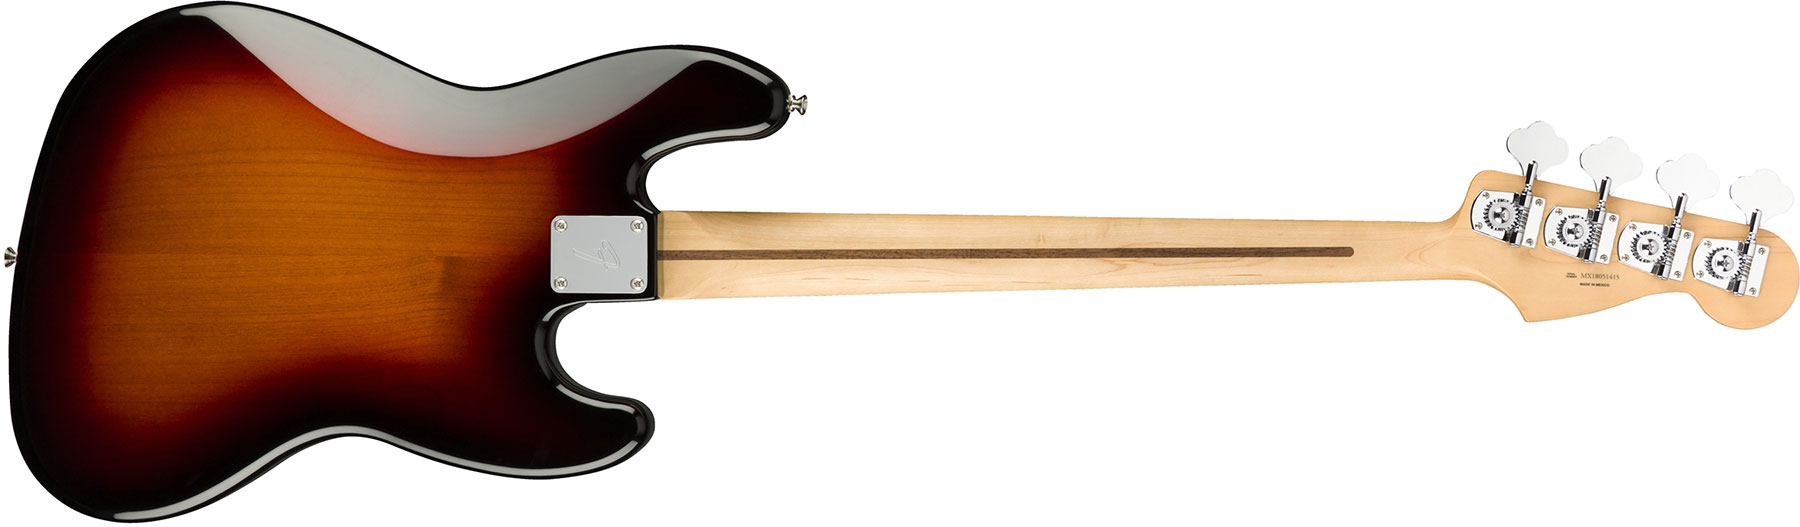 Fender Jazz Bass Player Lh Gaucher Mex Pf - 3-color Sunburst - Solid body elektrische bas - Variation 1